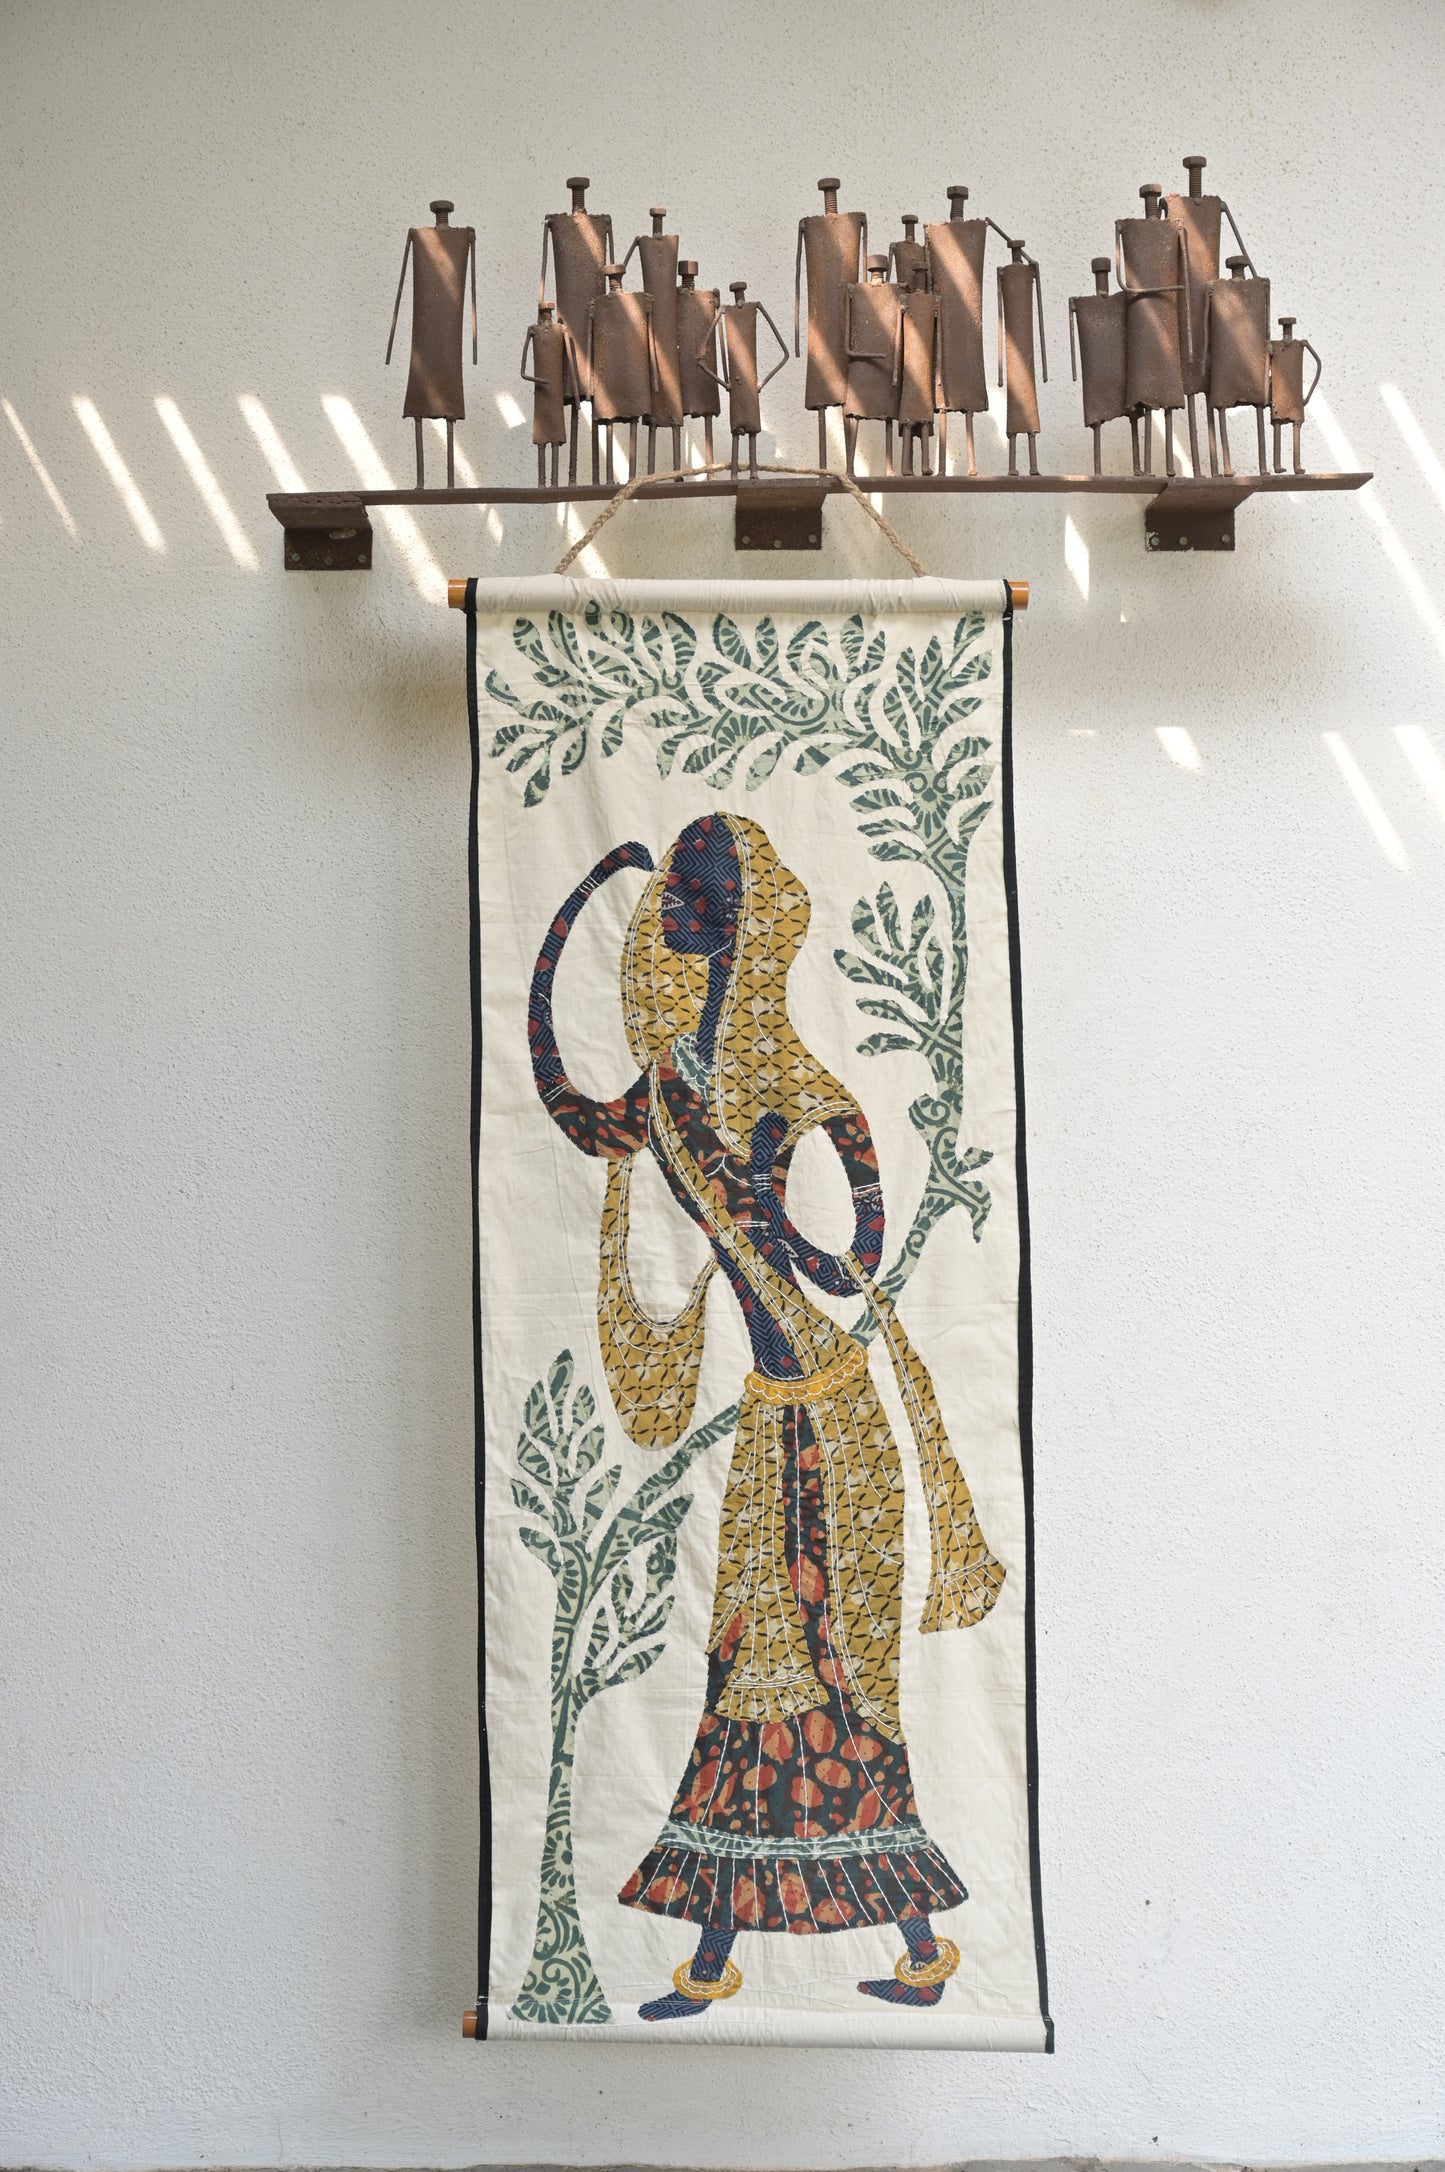 The Painjan Handmade Tapestry